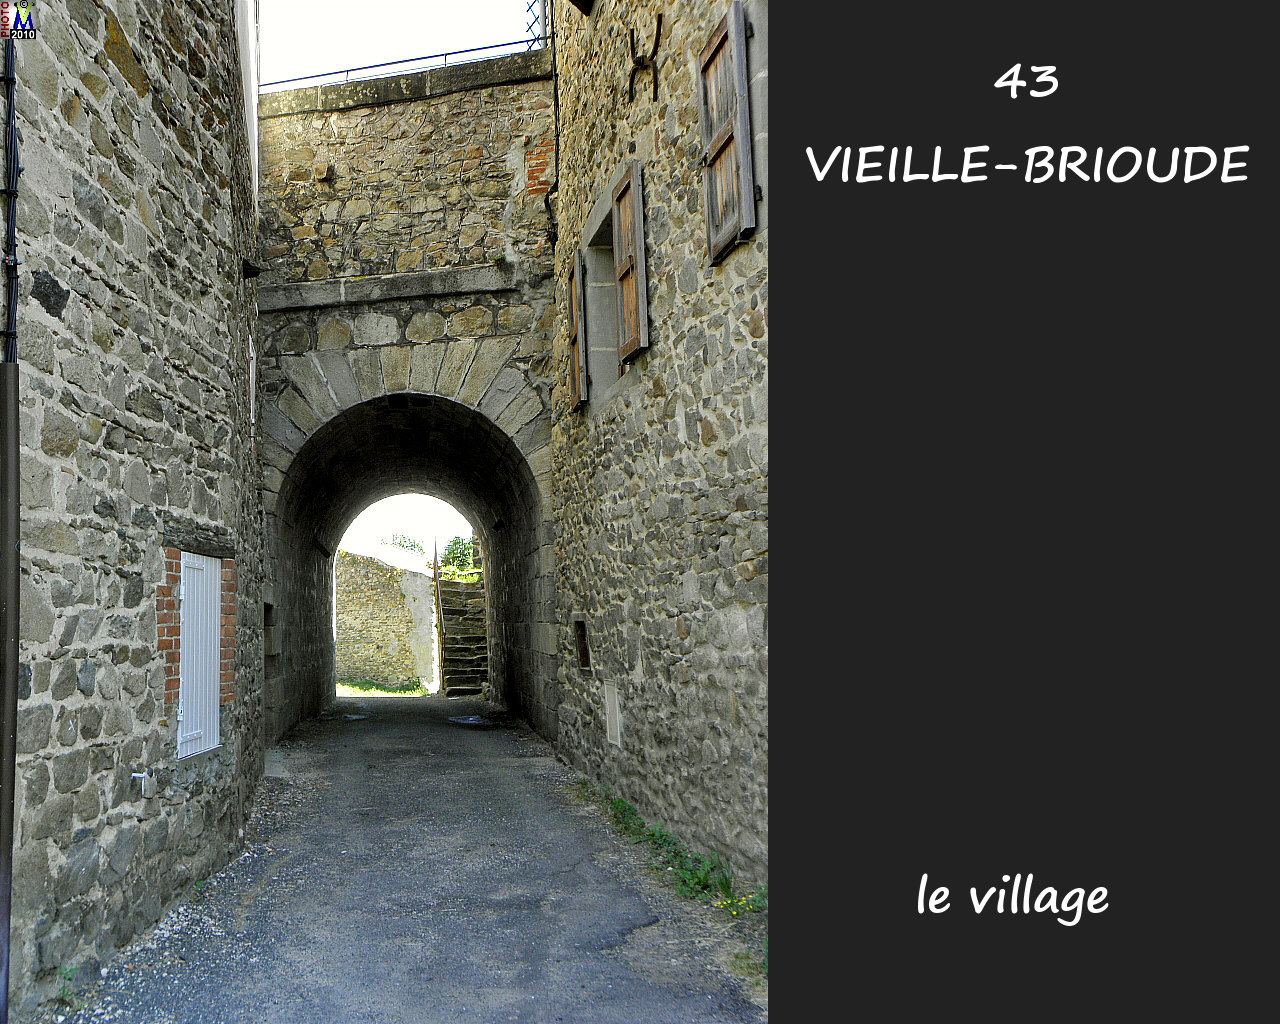 43VIEILLE-BRIOUDE_village_132.jpg